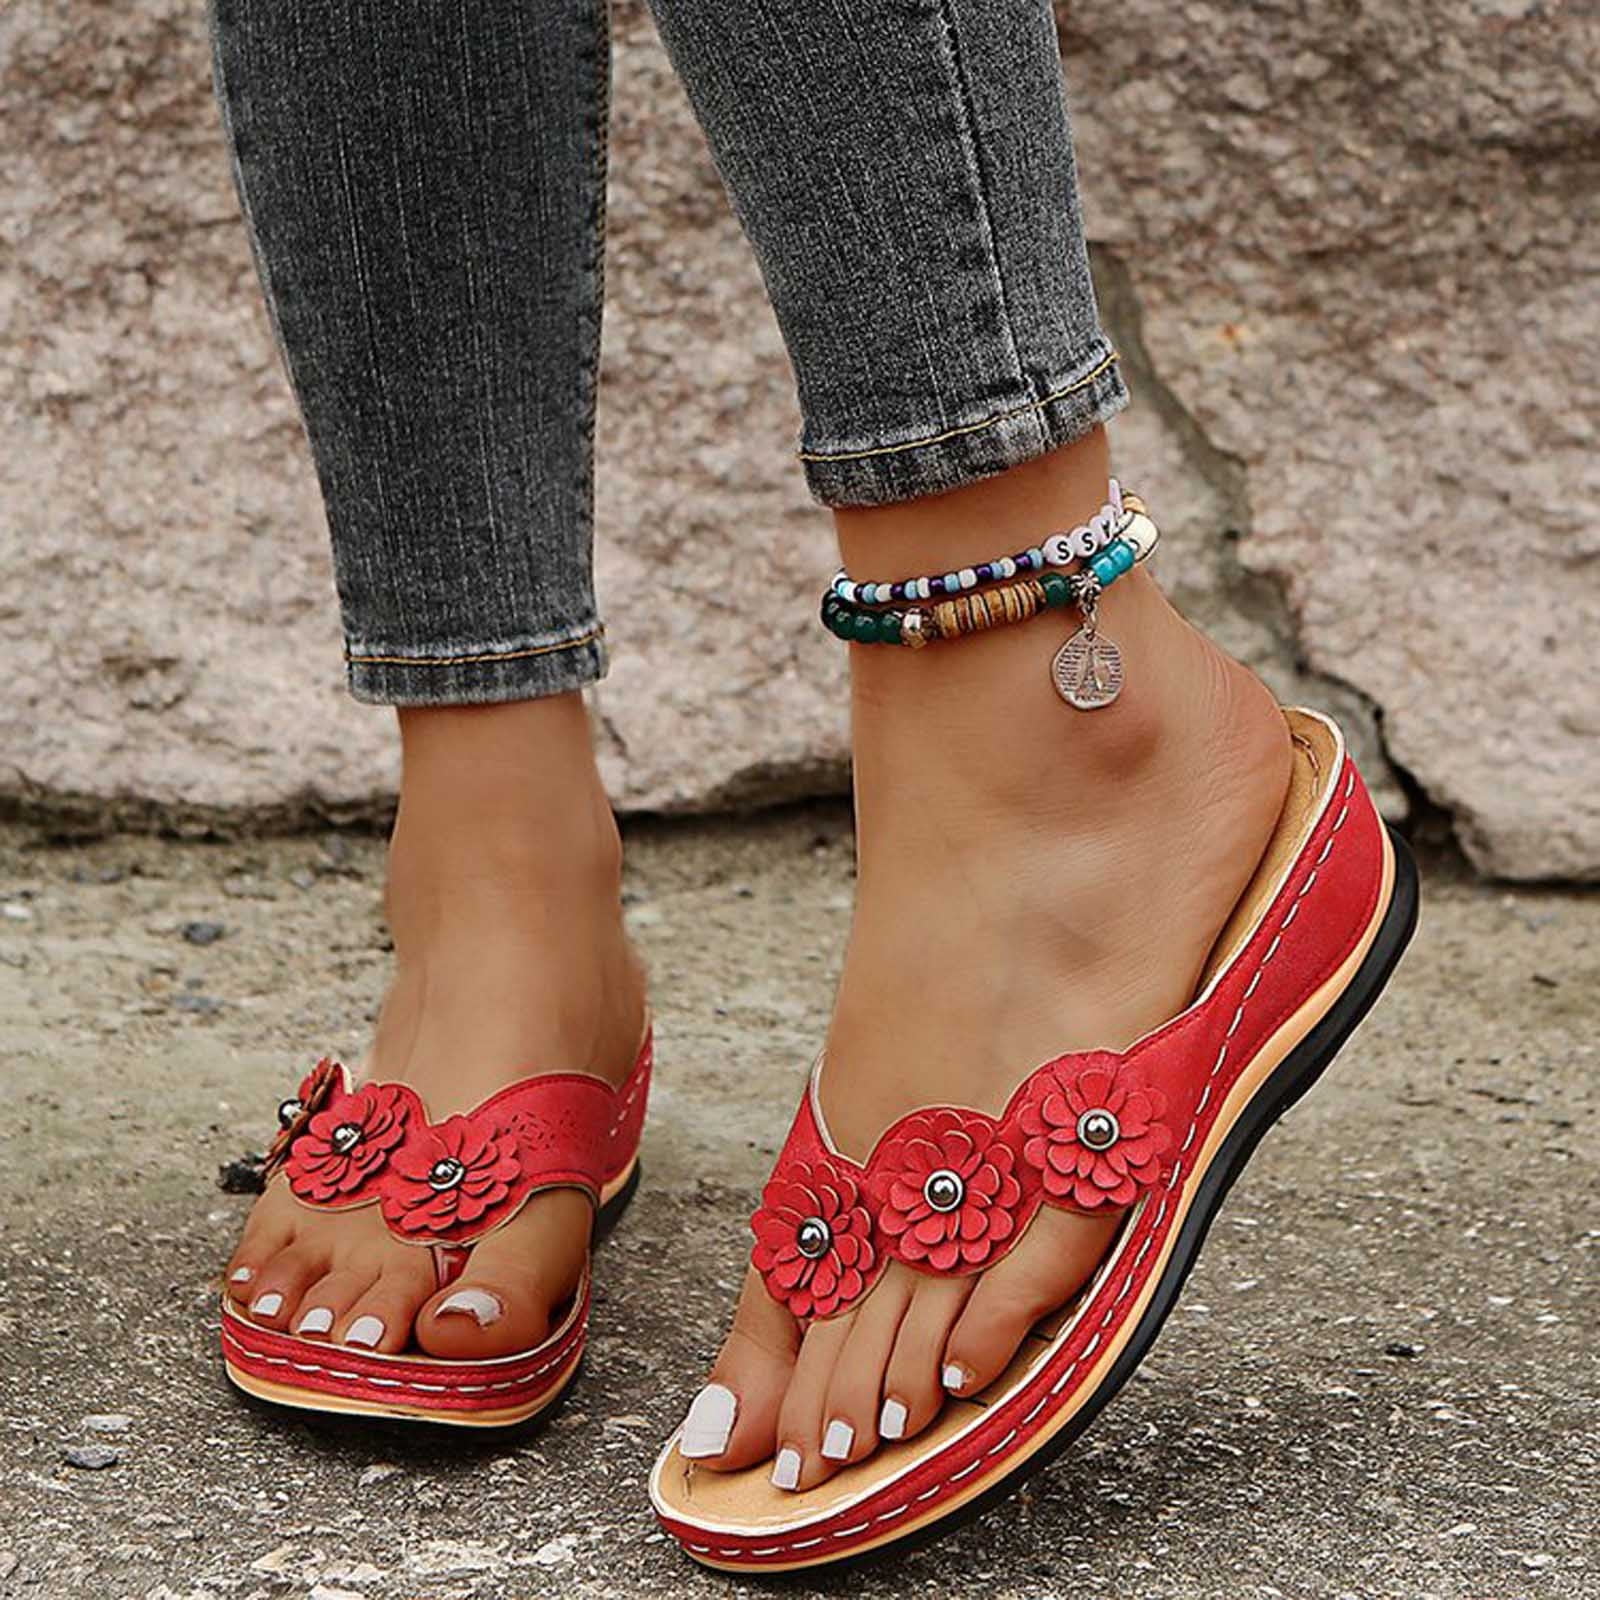 Details about   Transparent Sandals Women's High Heels Slingbacks Buckle Peeptoe Shoes Plus SizE 